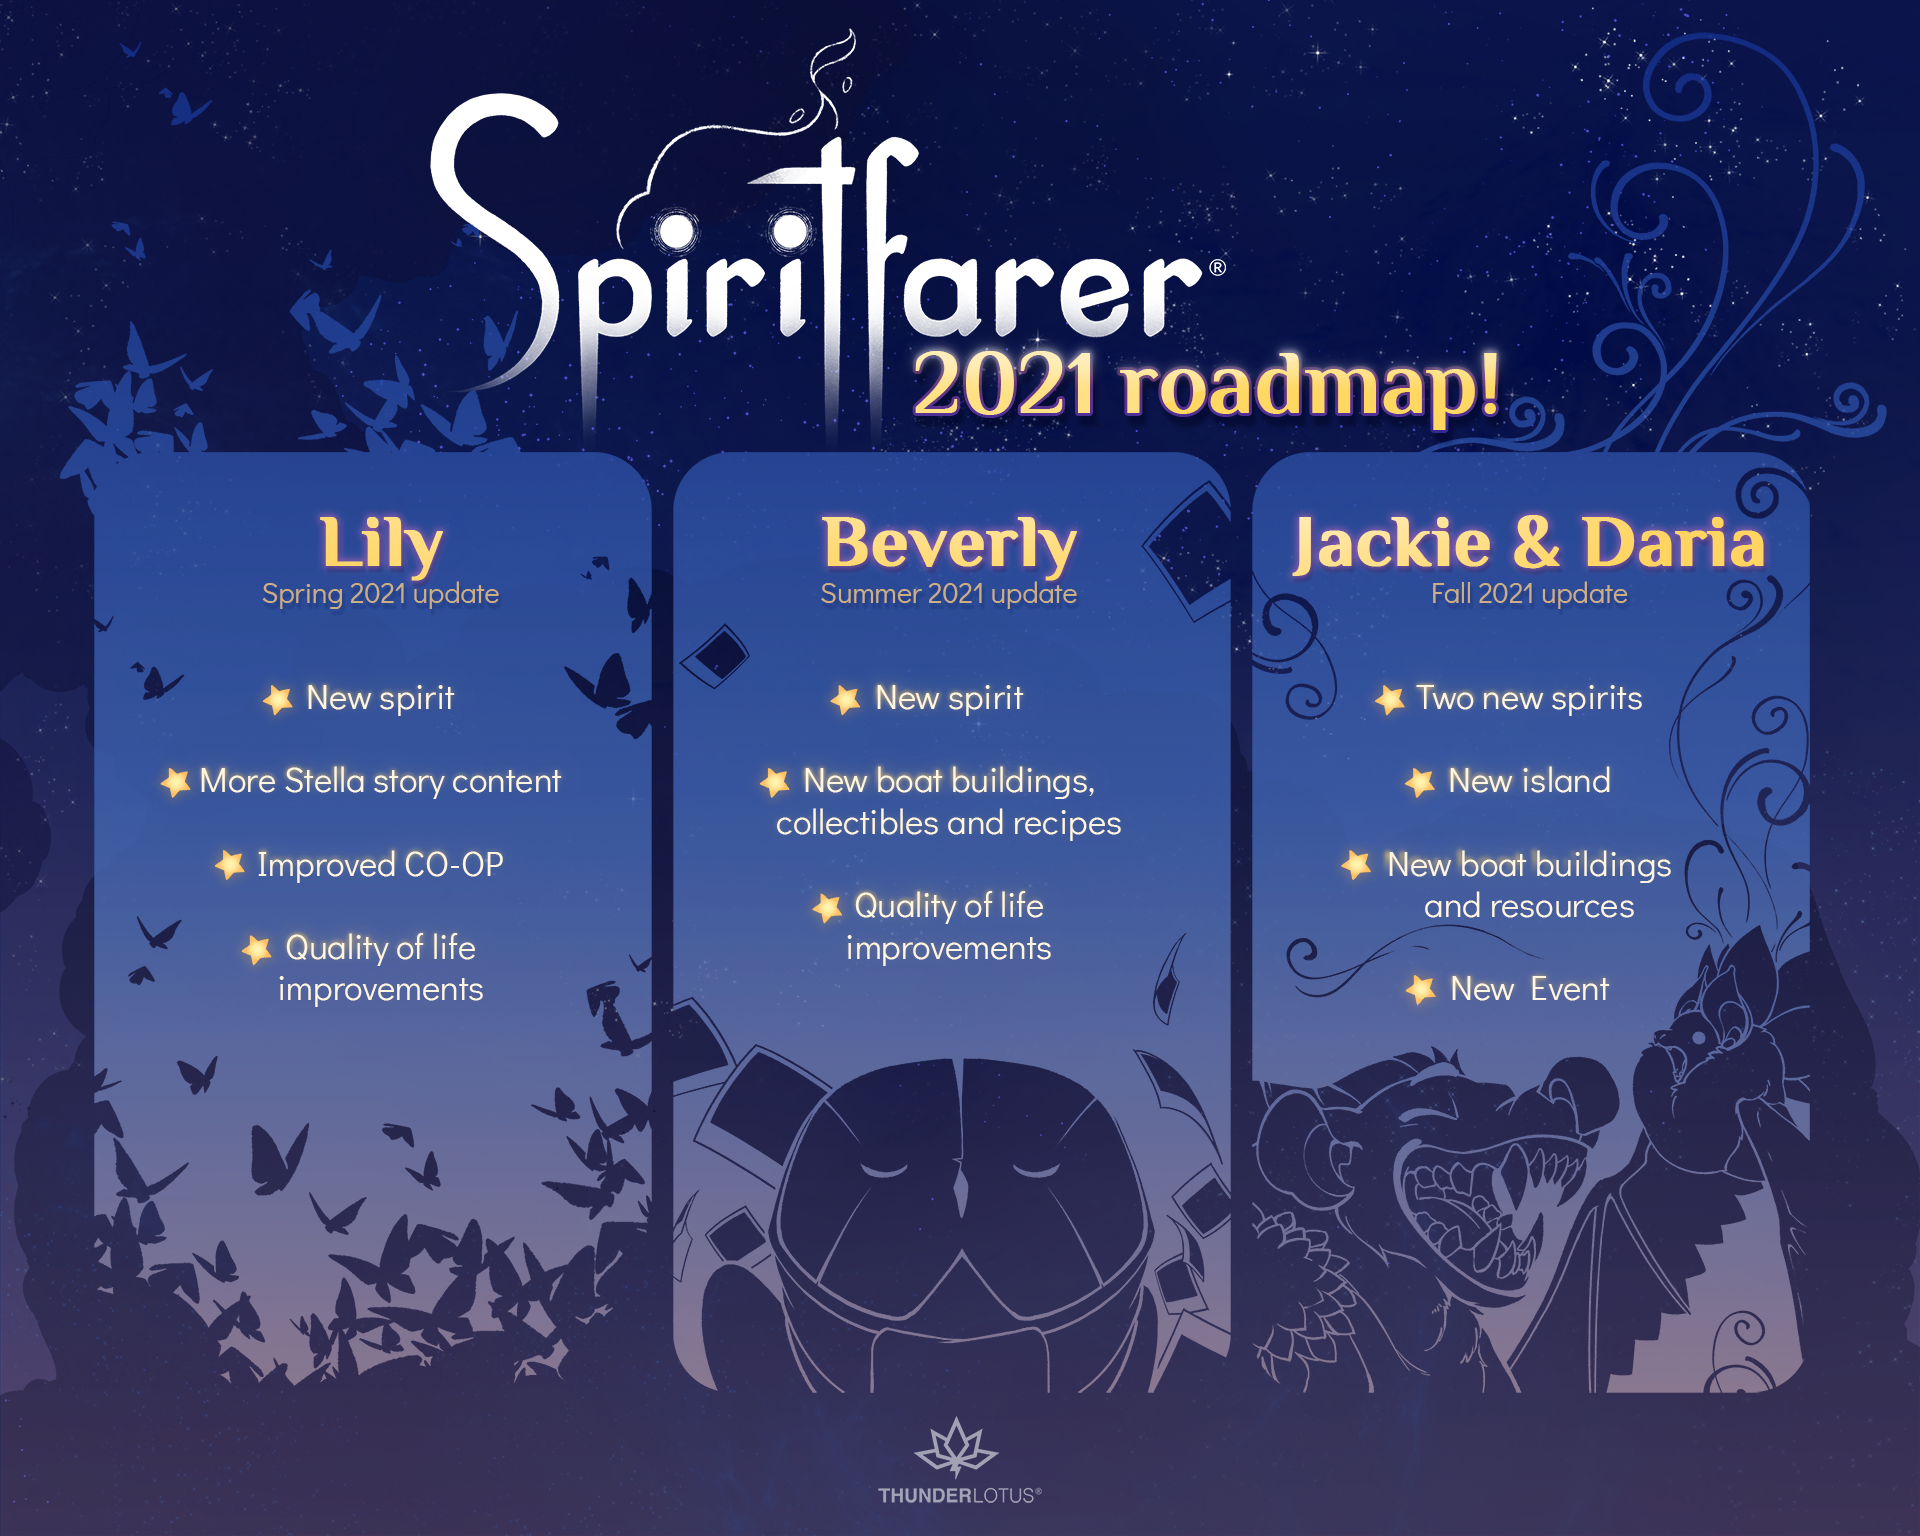 Spiritfarer recibirá nuevos contenidos en 2021 1